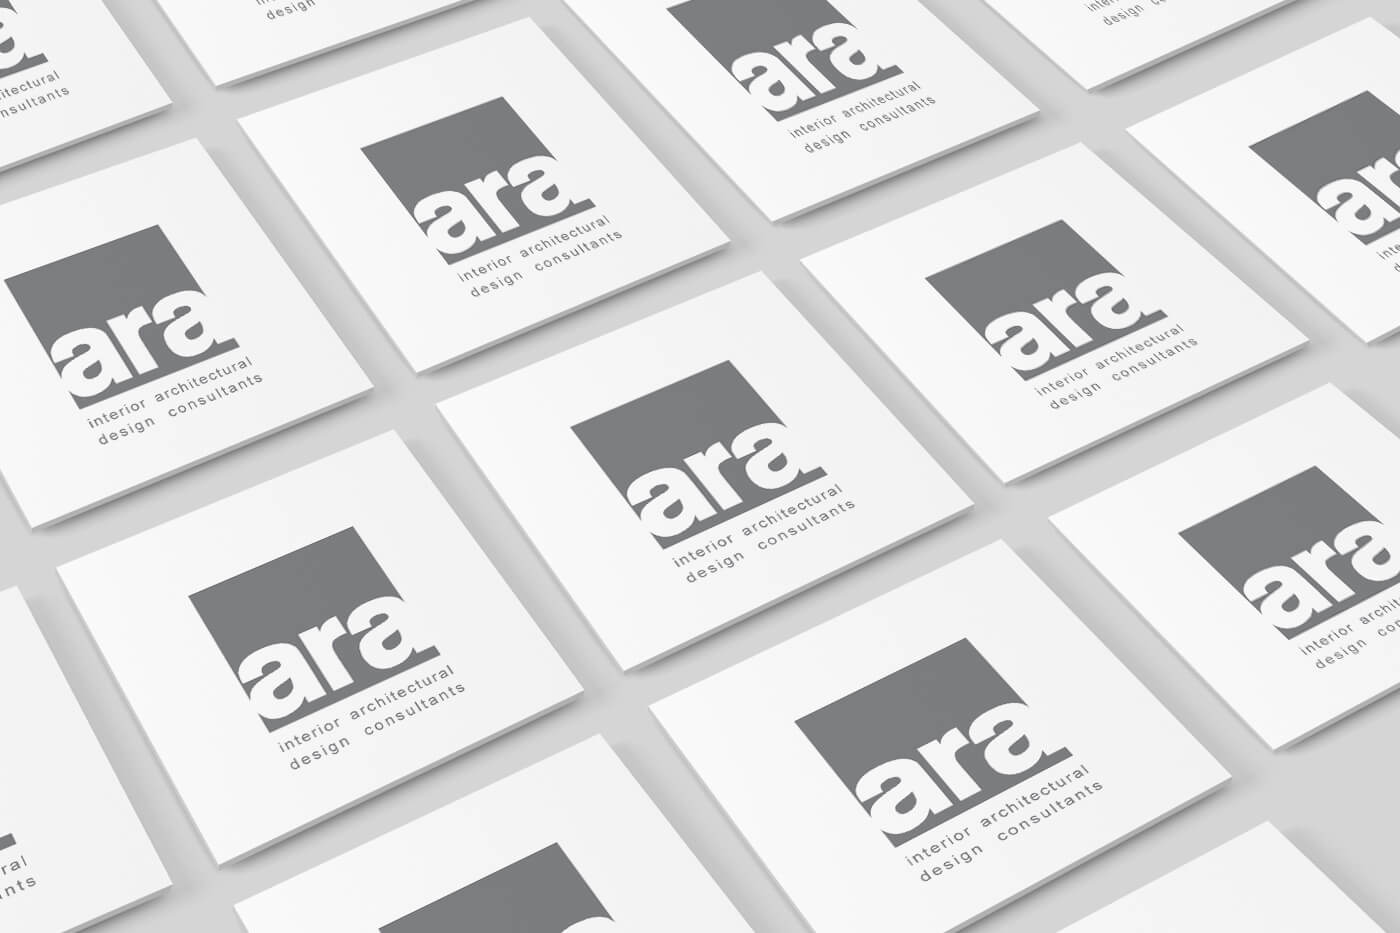 monginigraphics - ara design business cards